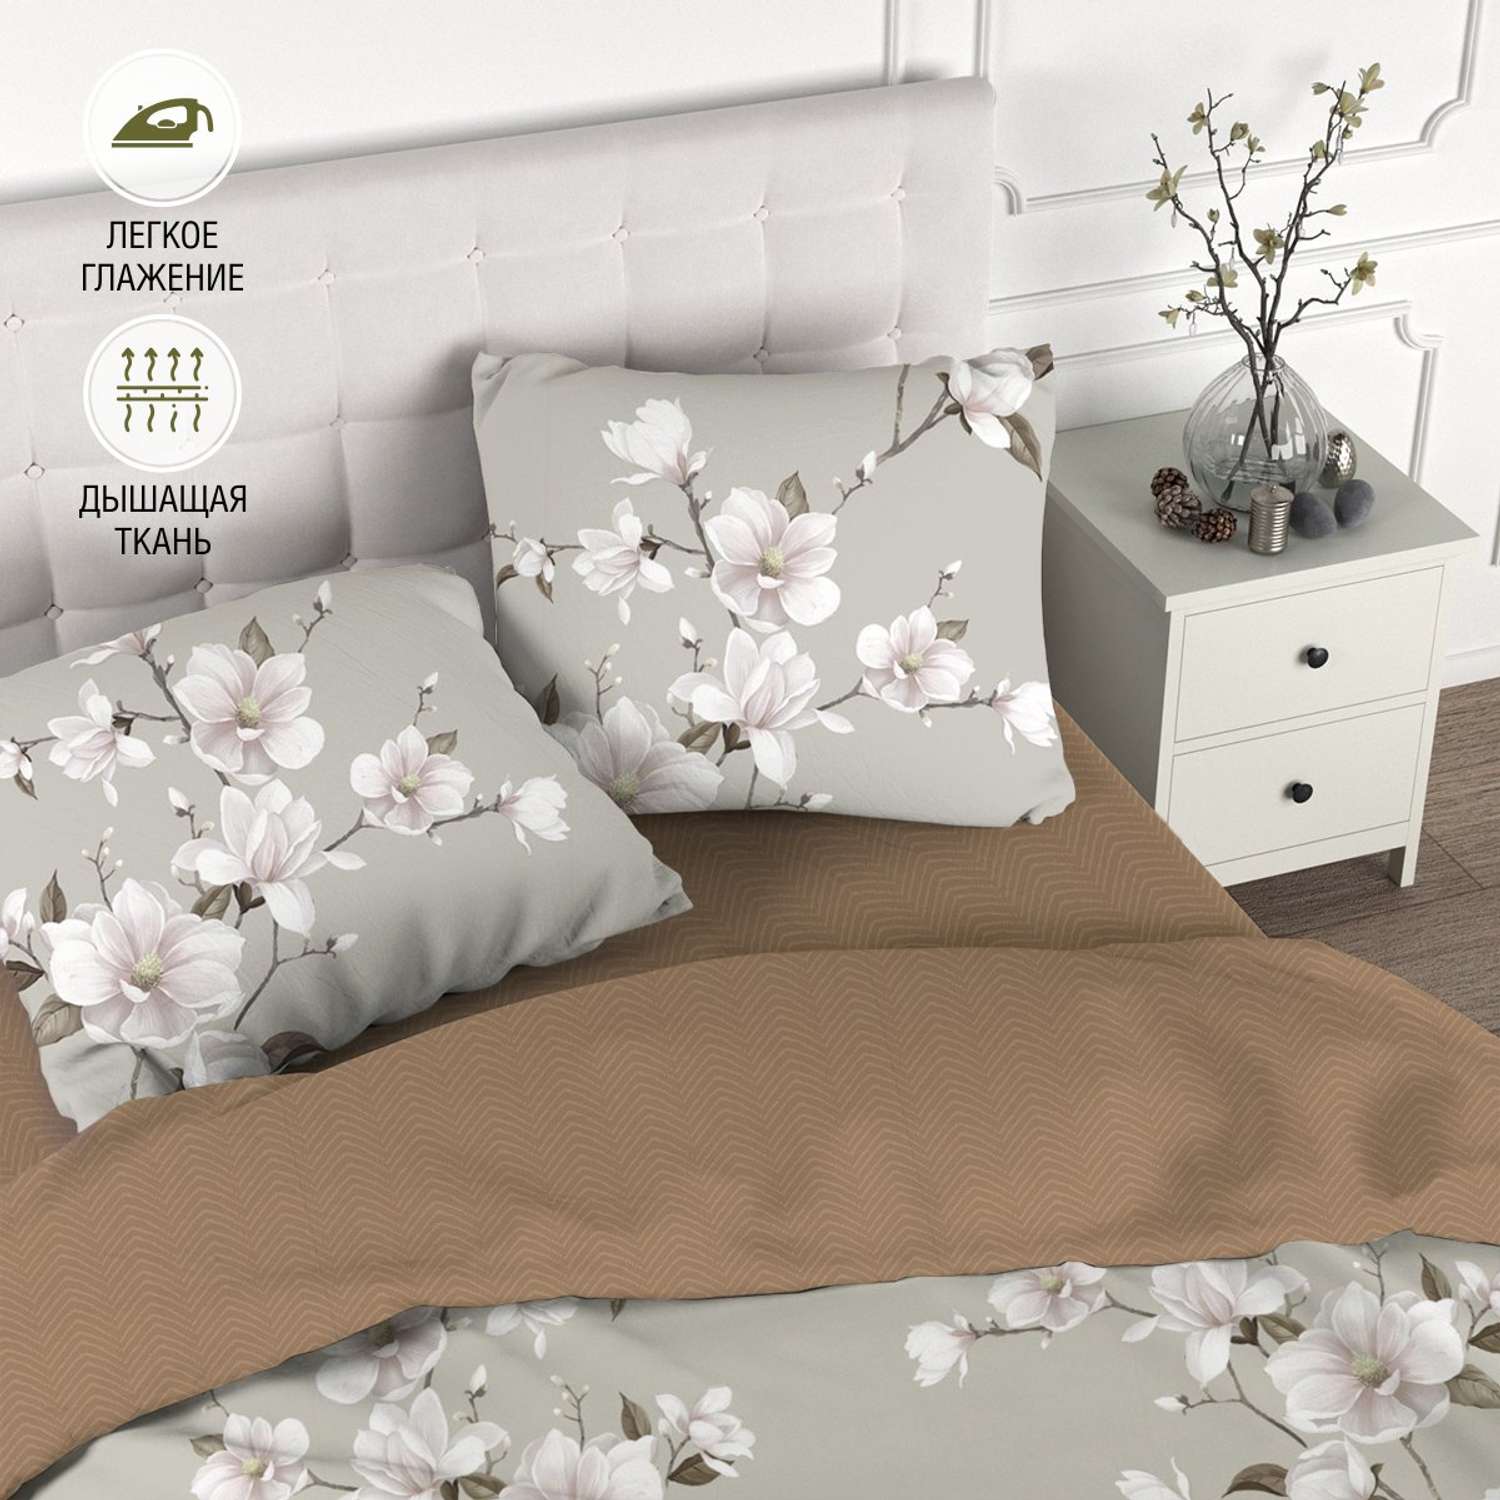 Комплект постельного белья для SNOFF Канела 1.5-спальный сатин рис.6084-1+6084а-1 - фото 2